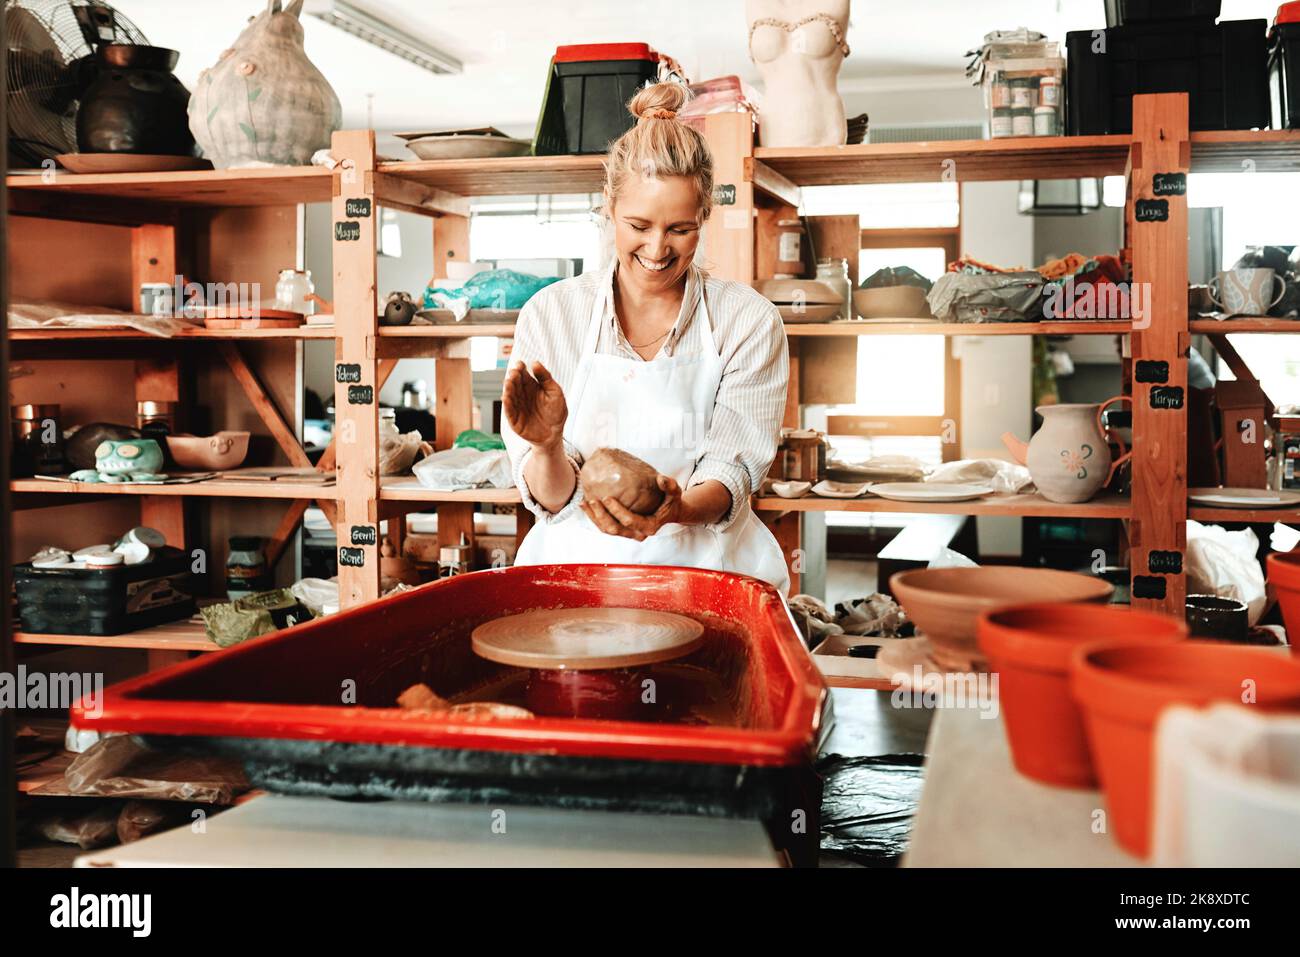 Verwenden Sie Ihre Leidenschaft als eine Möglichkeit, Geld zu verdienen. Eine weibliche Kunsthandwerkerin arbeitet in ihrer Töpferei. Stockfoto